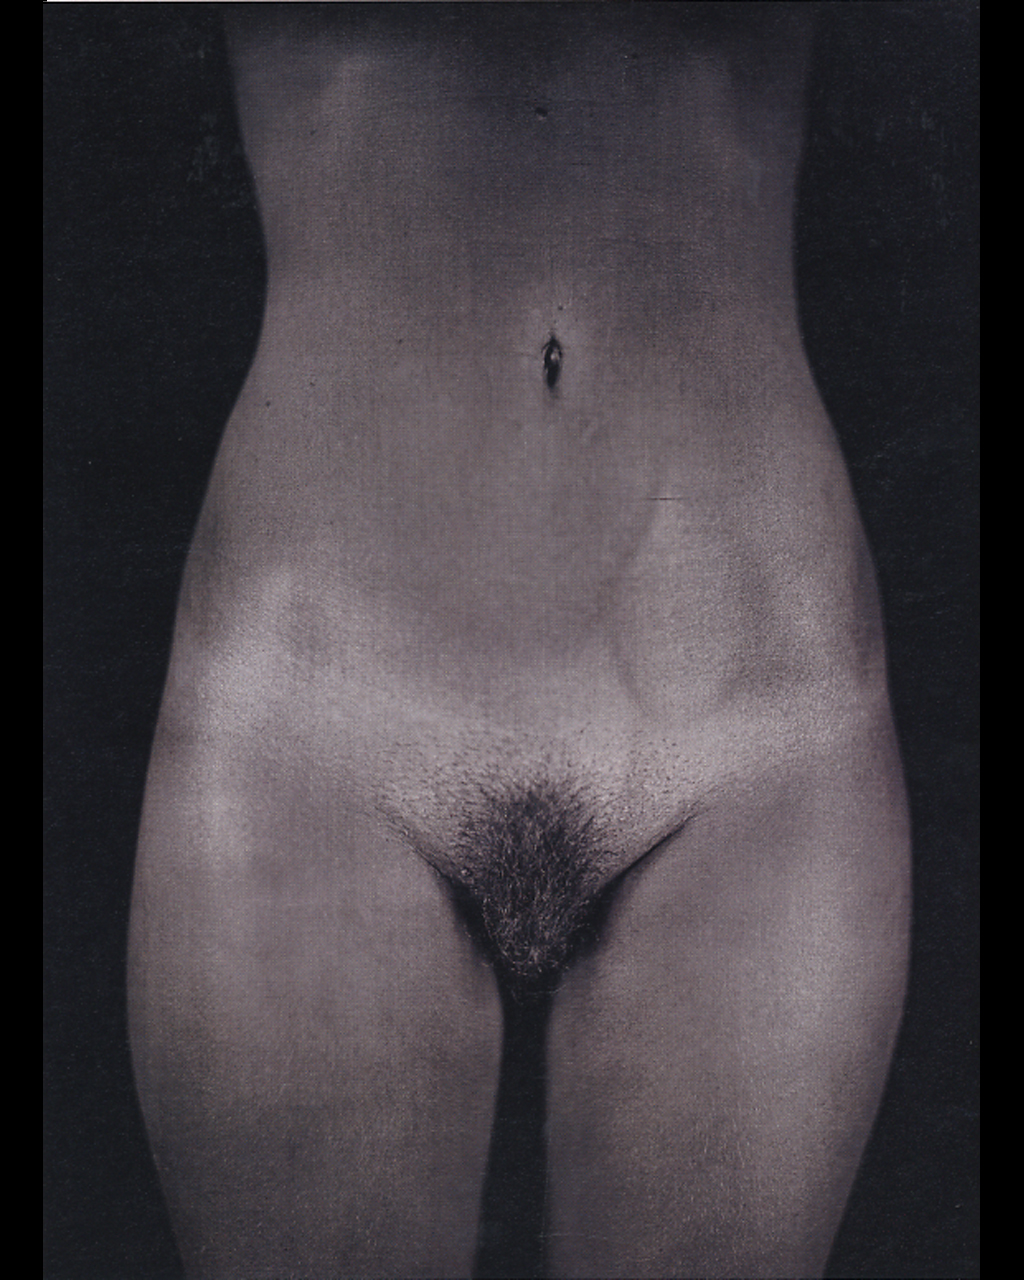 Photographer/Artist Chuck Close's Photographs of Brad Pitt & Kate Moss...